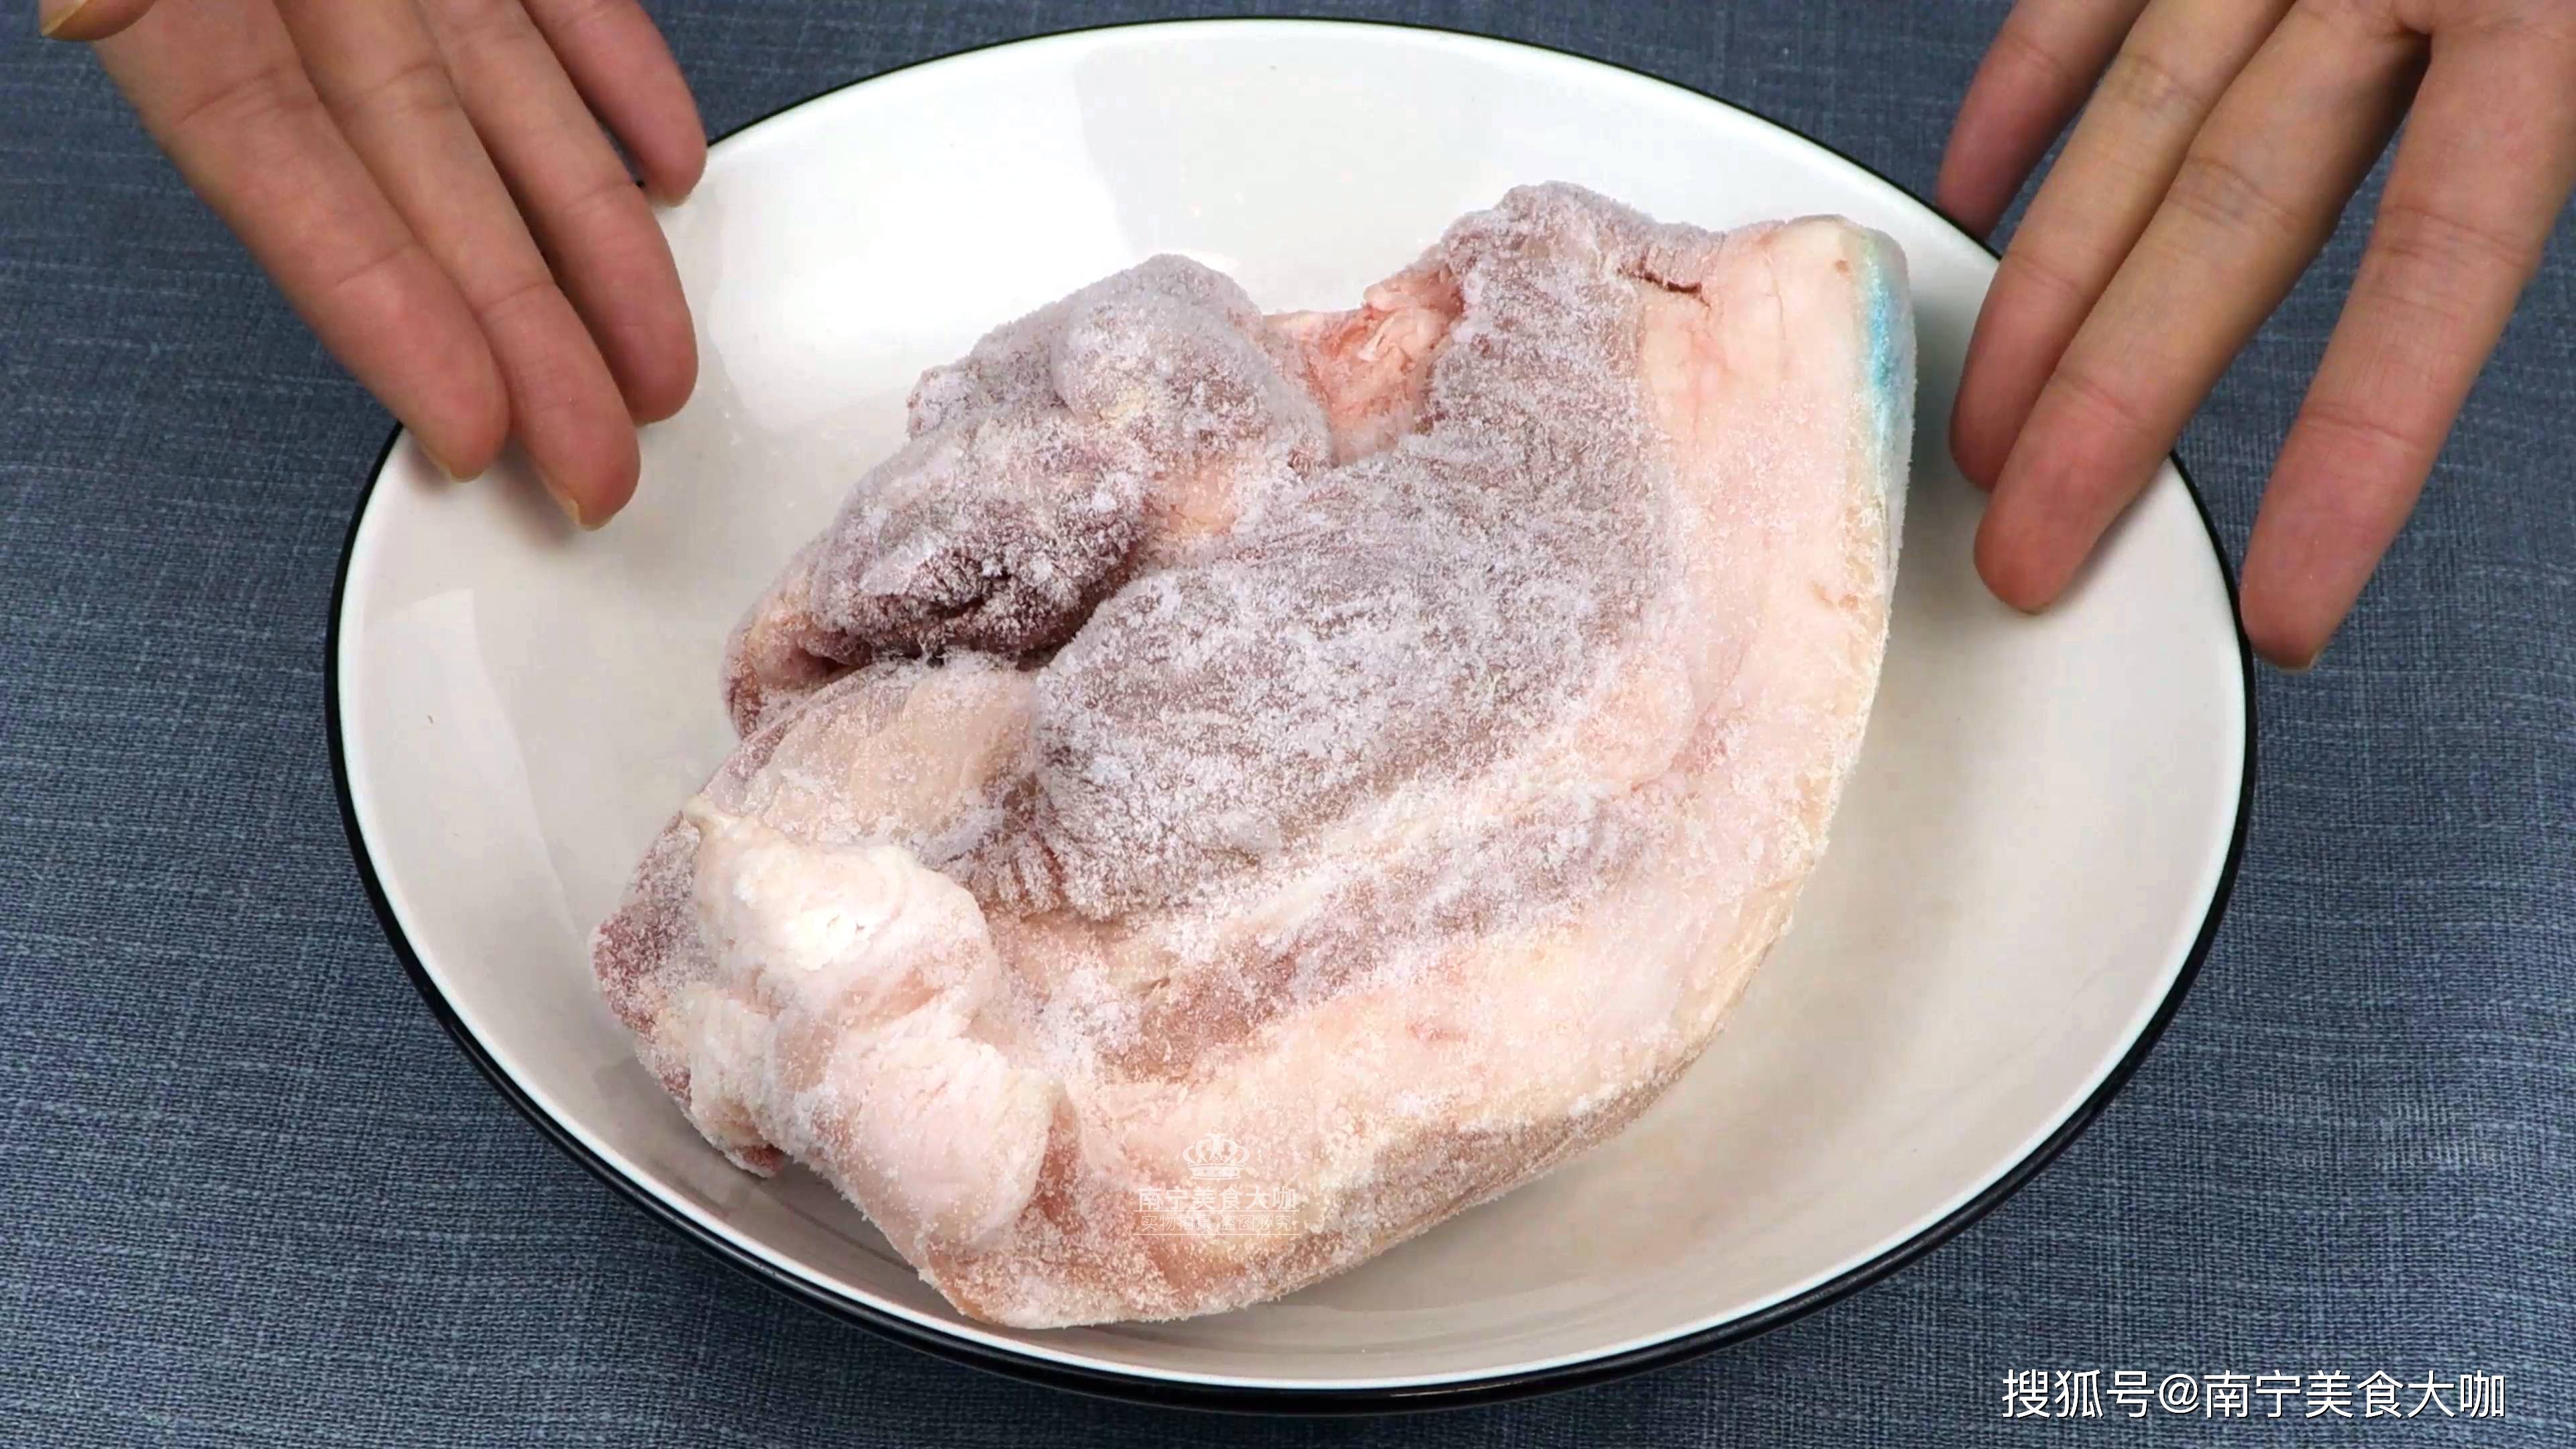 原创解冻猪肉用热水还是冷水?很多人用错了,难怪猪肉解冻出来不好吃